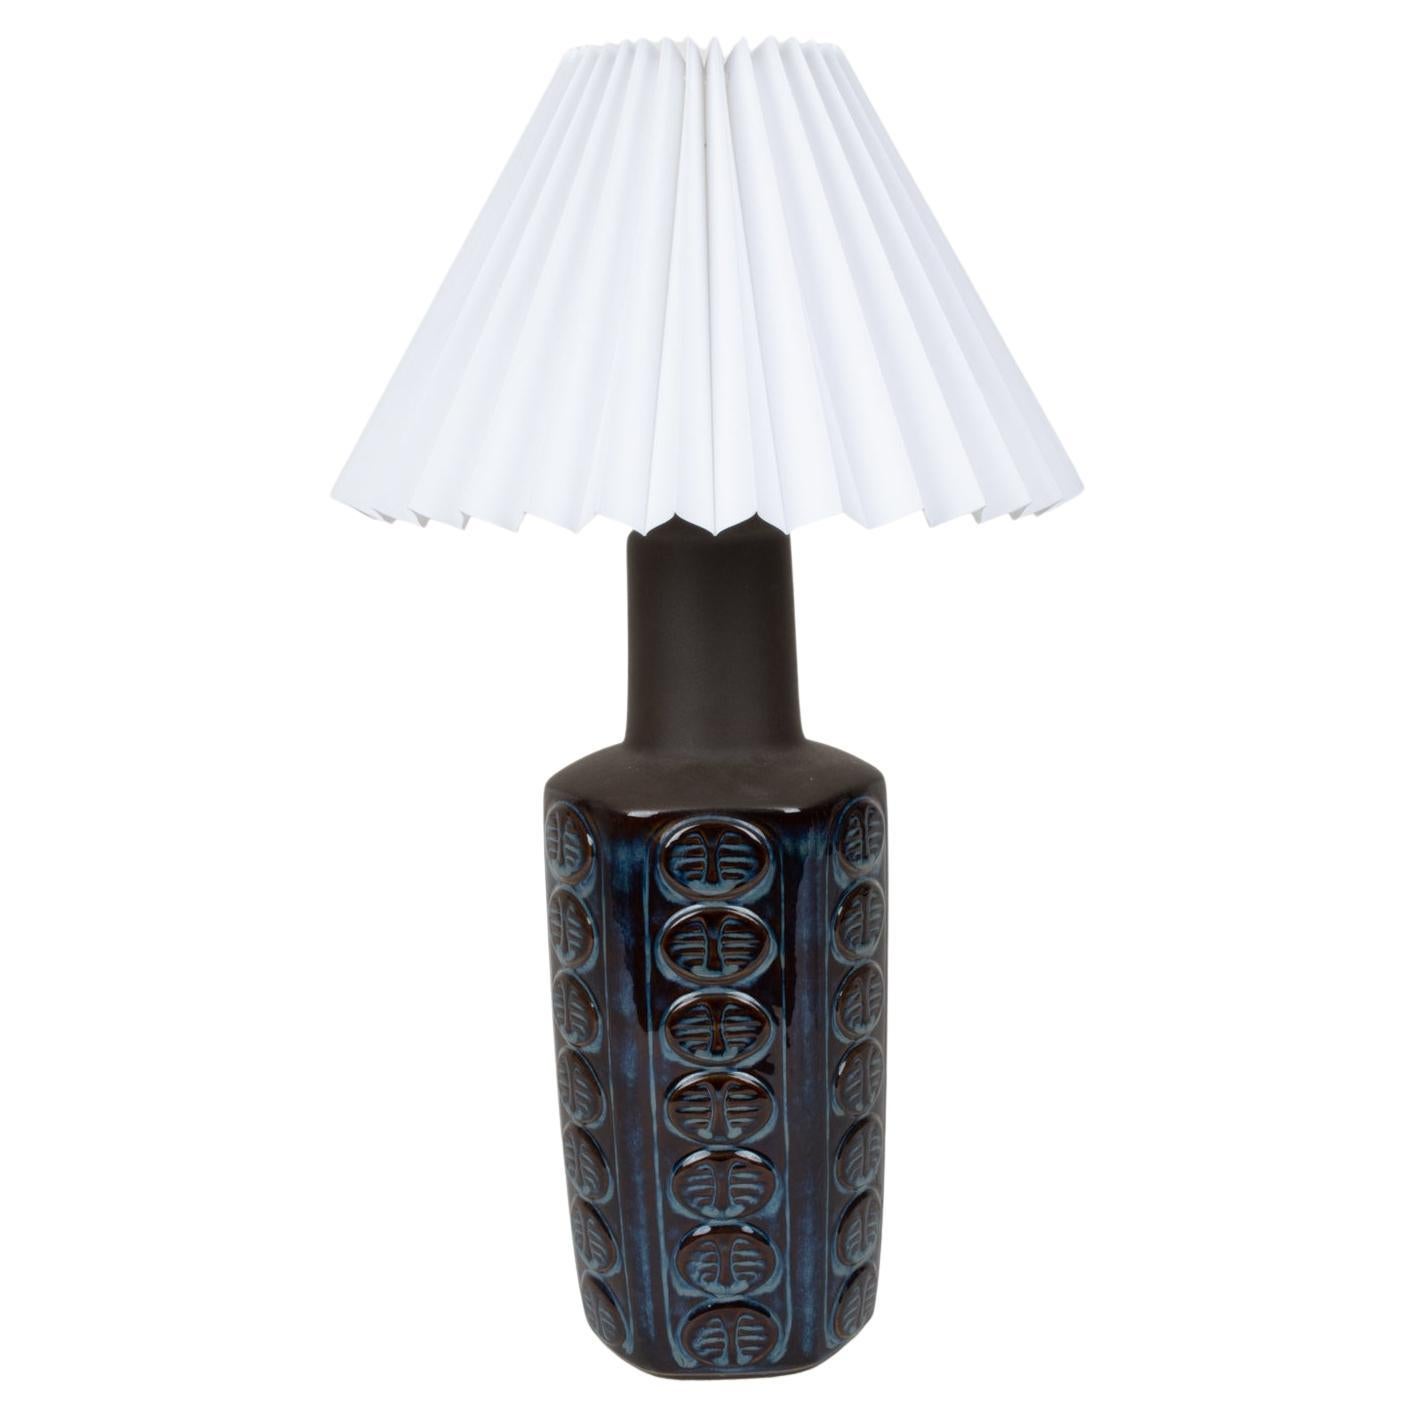 Einar Johansen for Soholm Danish Midcentury Glazed Ceramic Table Lamp